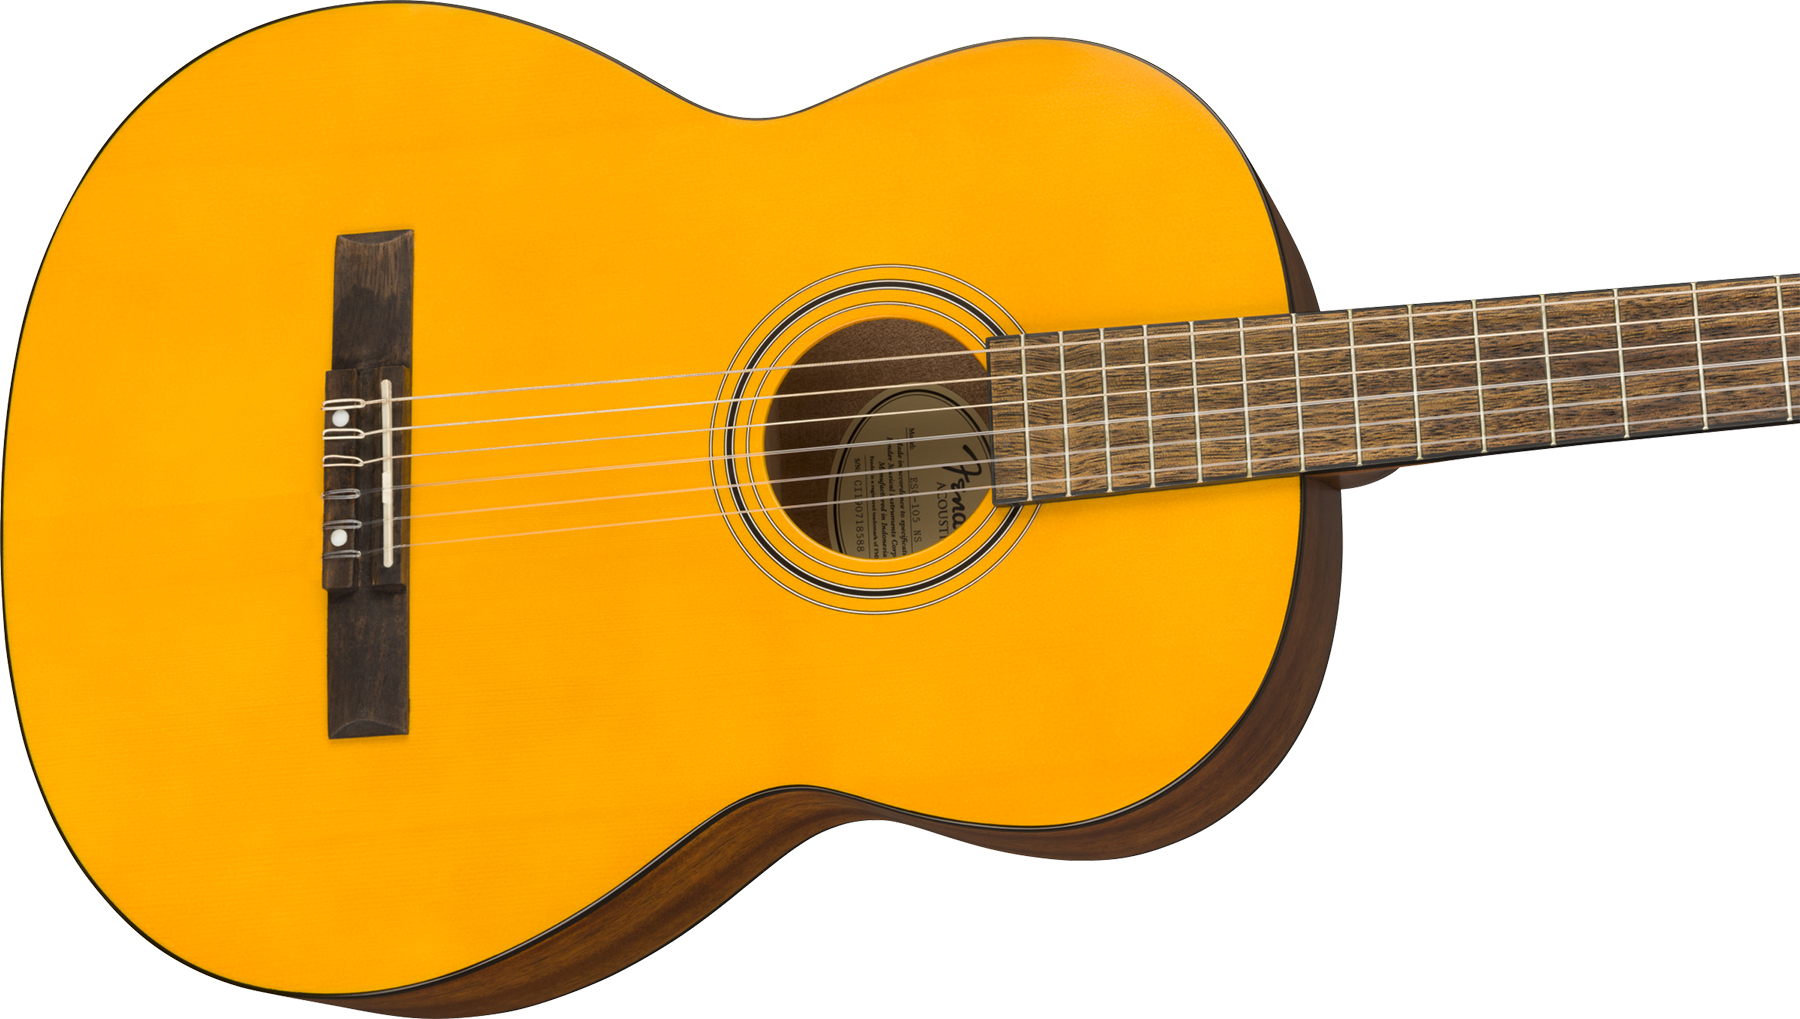 Fender Esc-105 Classical Educational Tout Okoume Noy - Vintage Natural Satin - Guitare Classique Format 4/4 - Variation 2